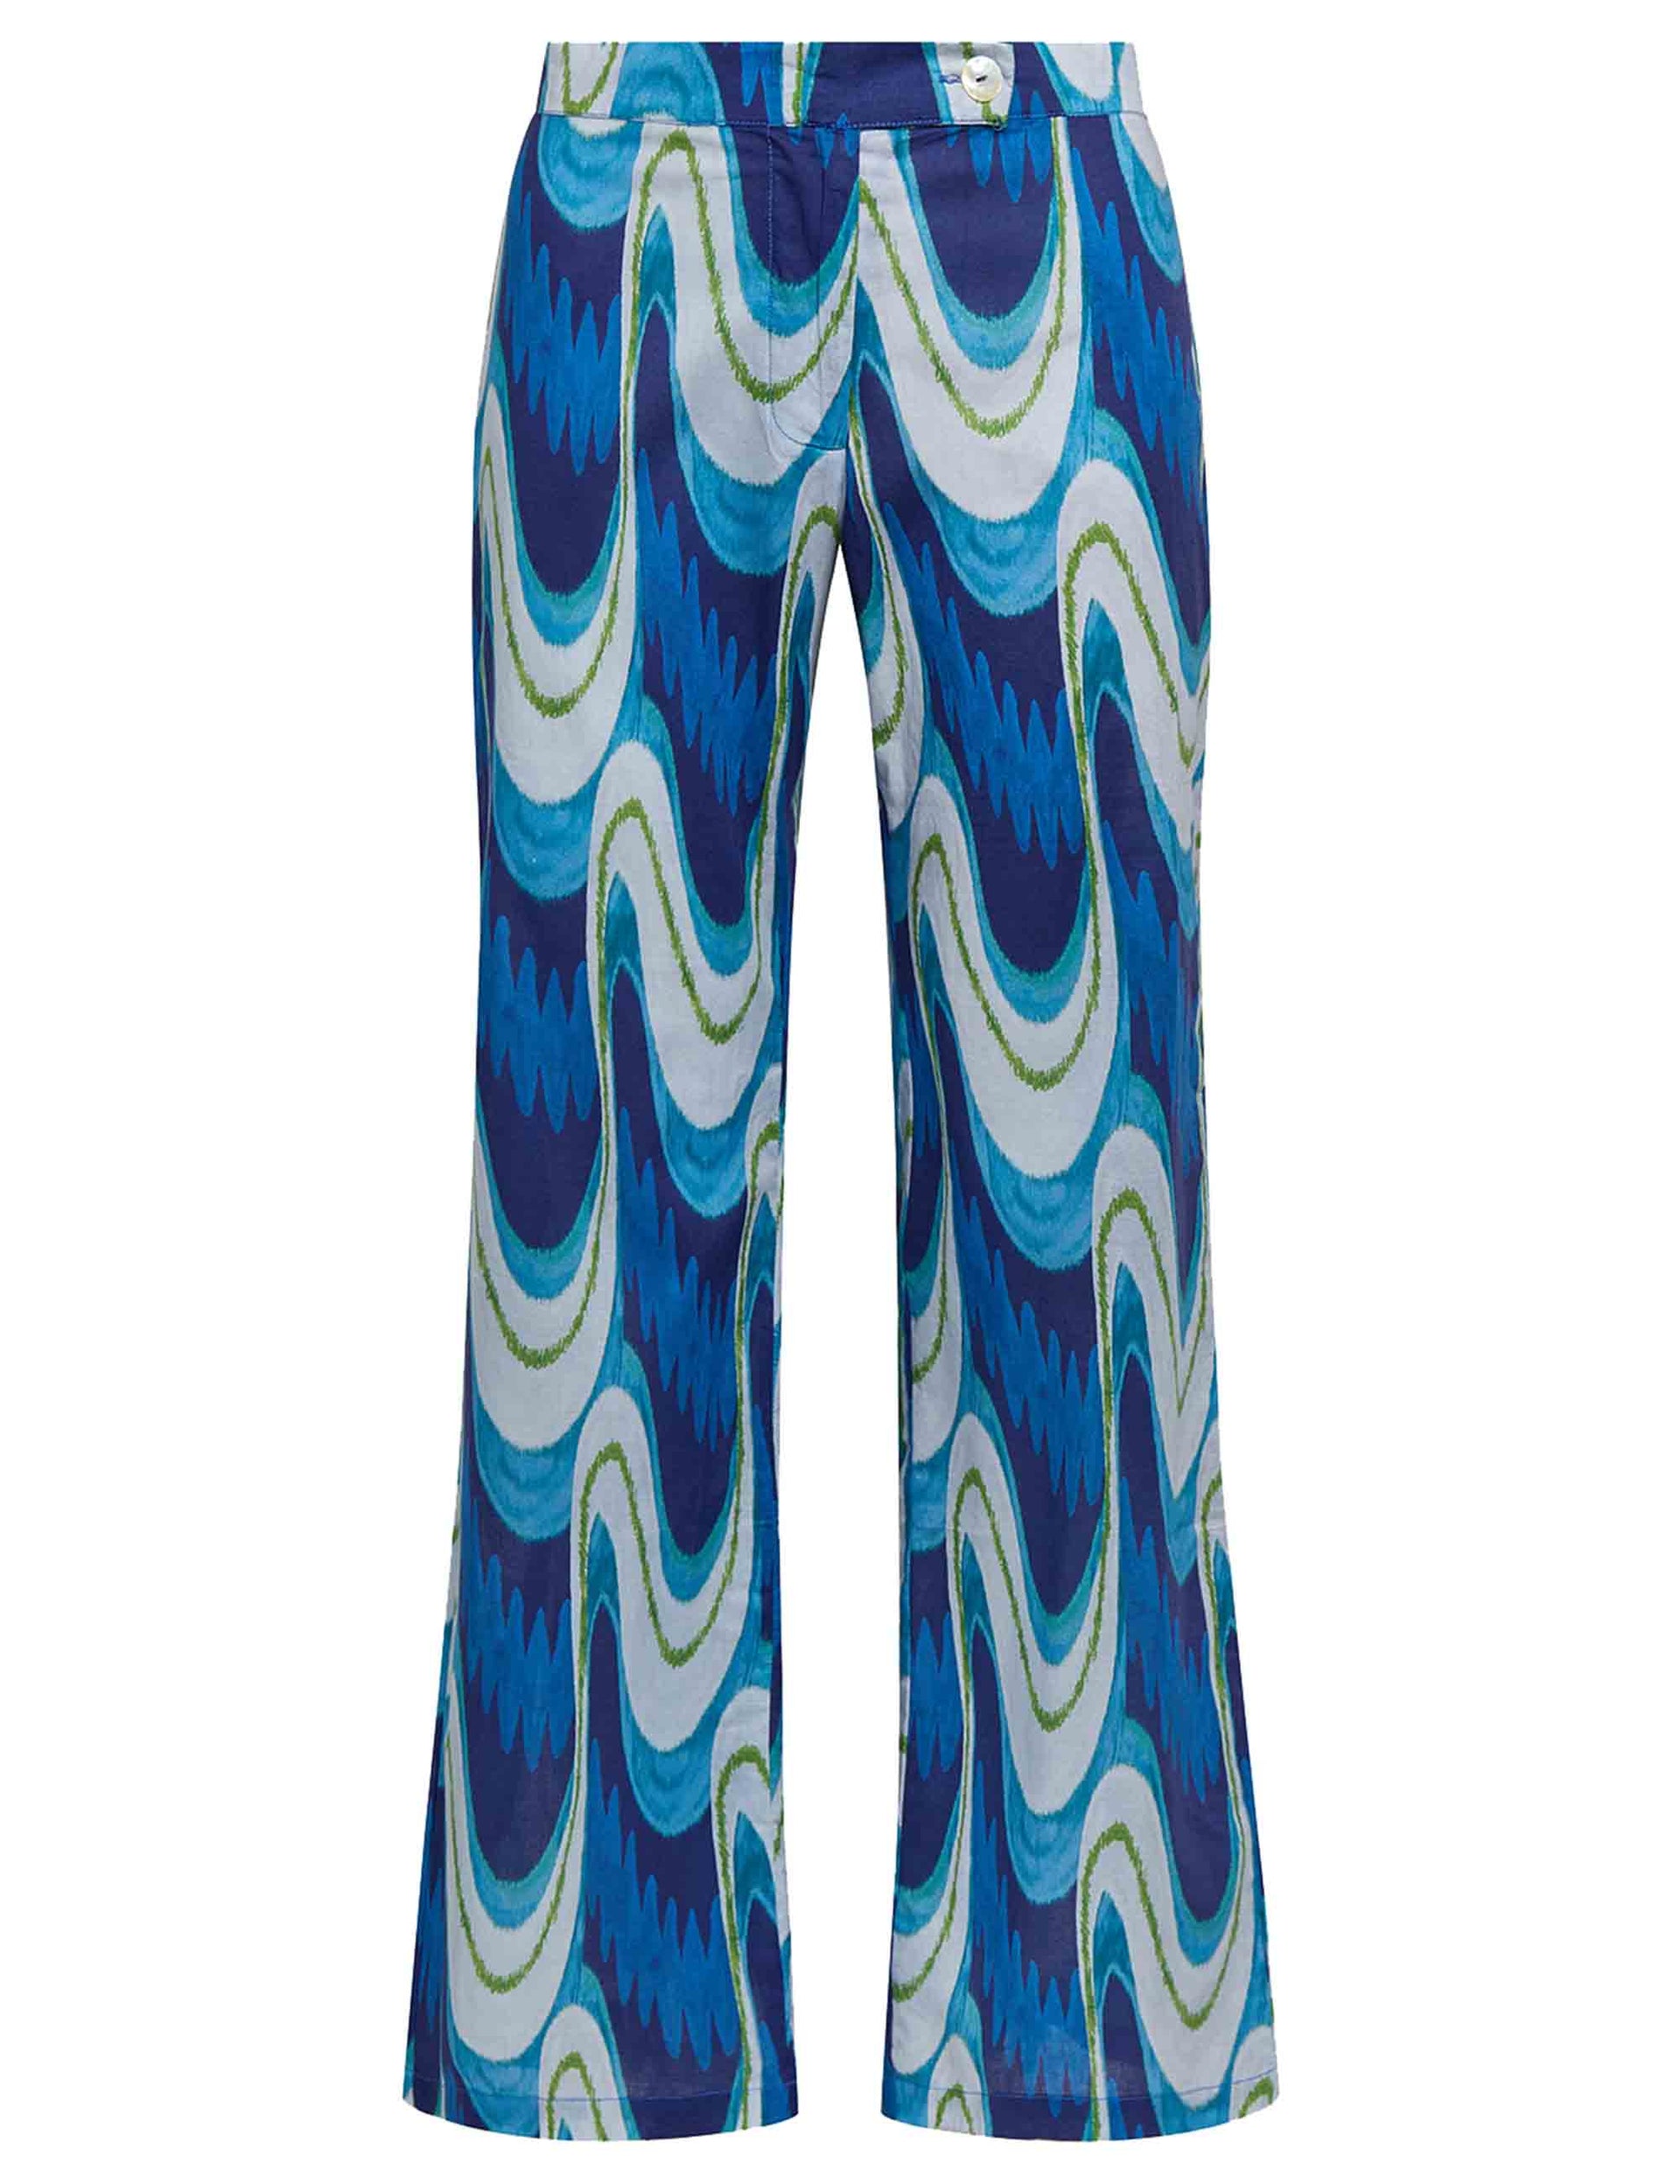 Women's Ikat Wave Muslin trousers in patterned blue cotton